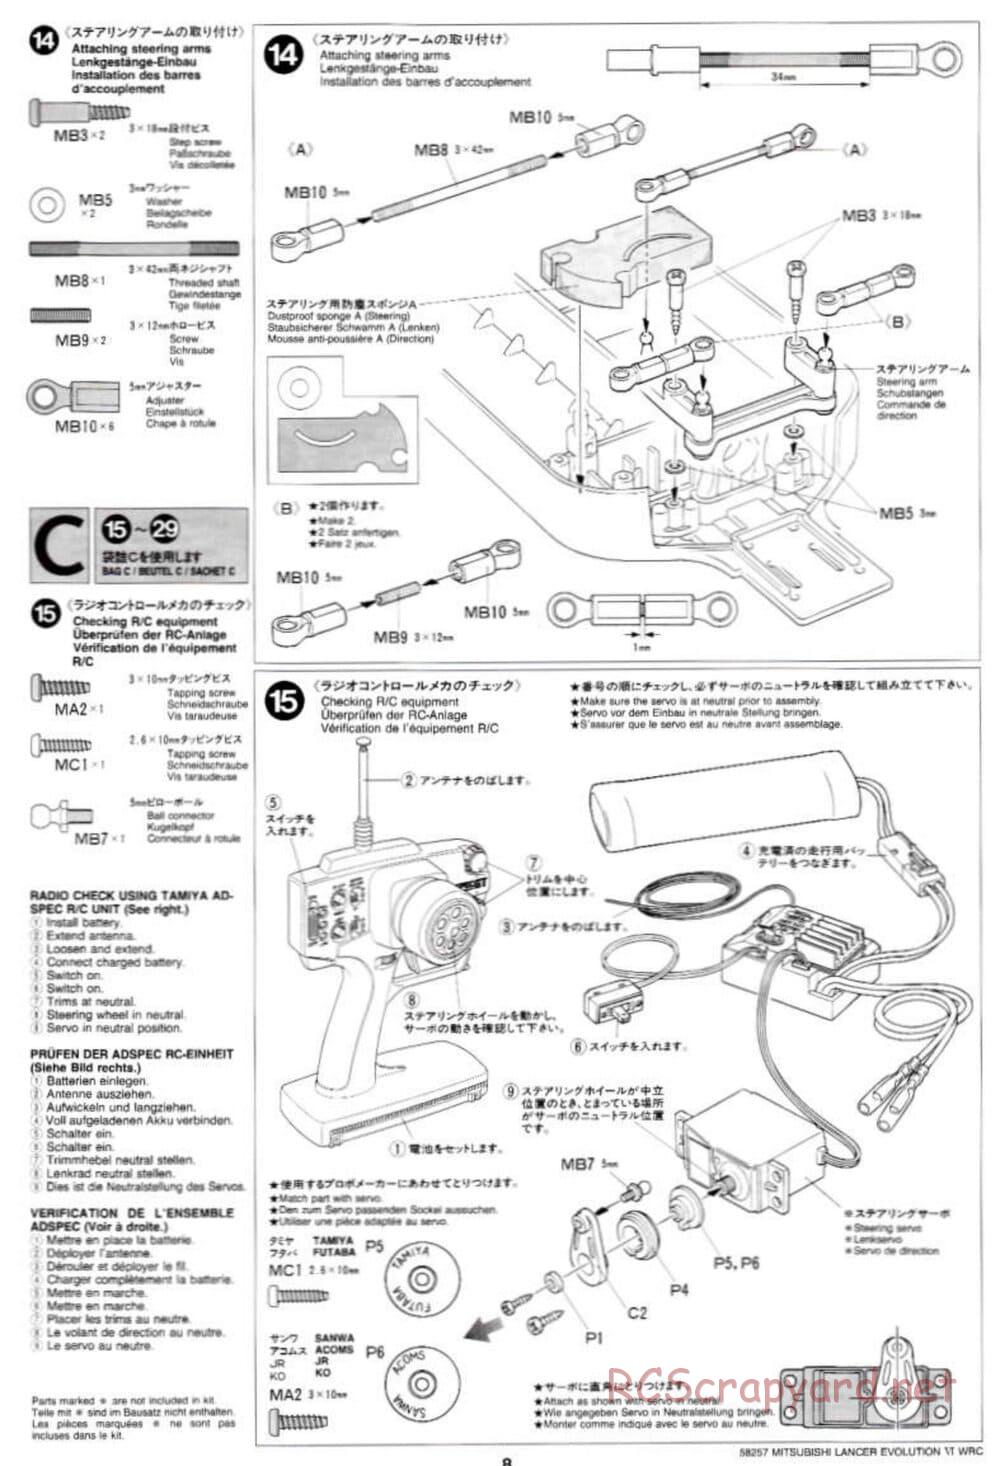 Tamiya - Mitsubishi Lancer Evolution VI WRC - TB-01 Chassis - Manual - Page 8